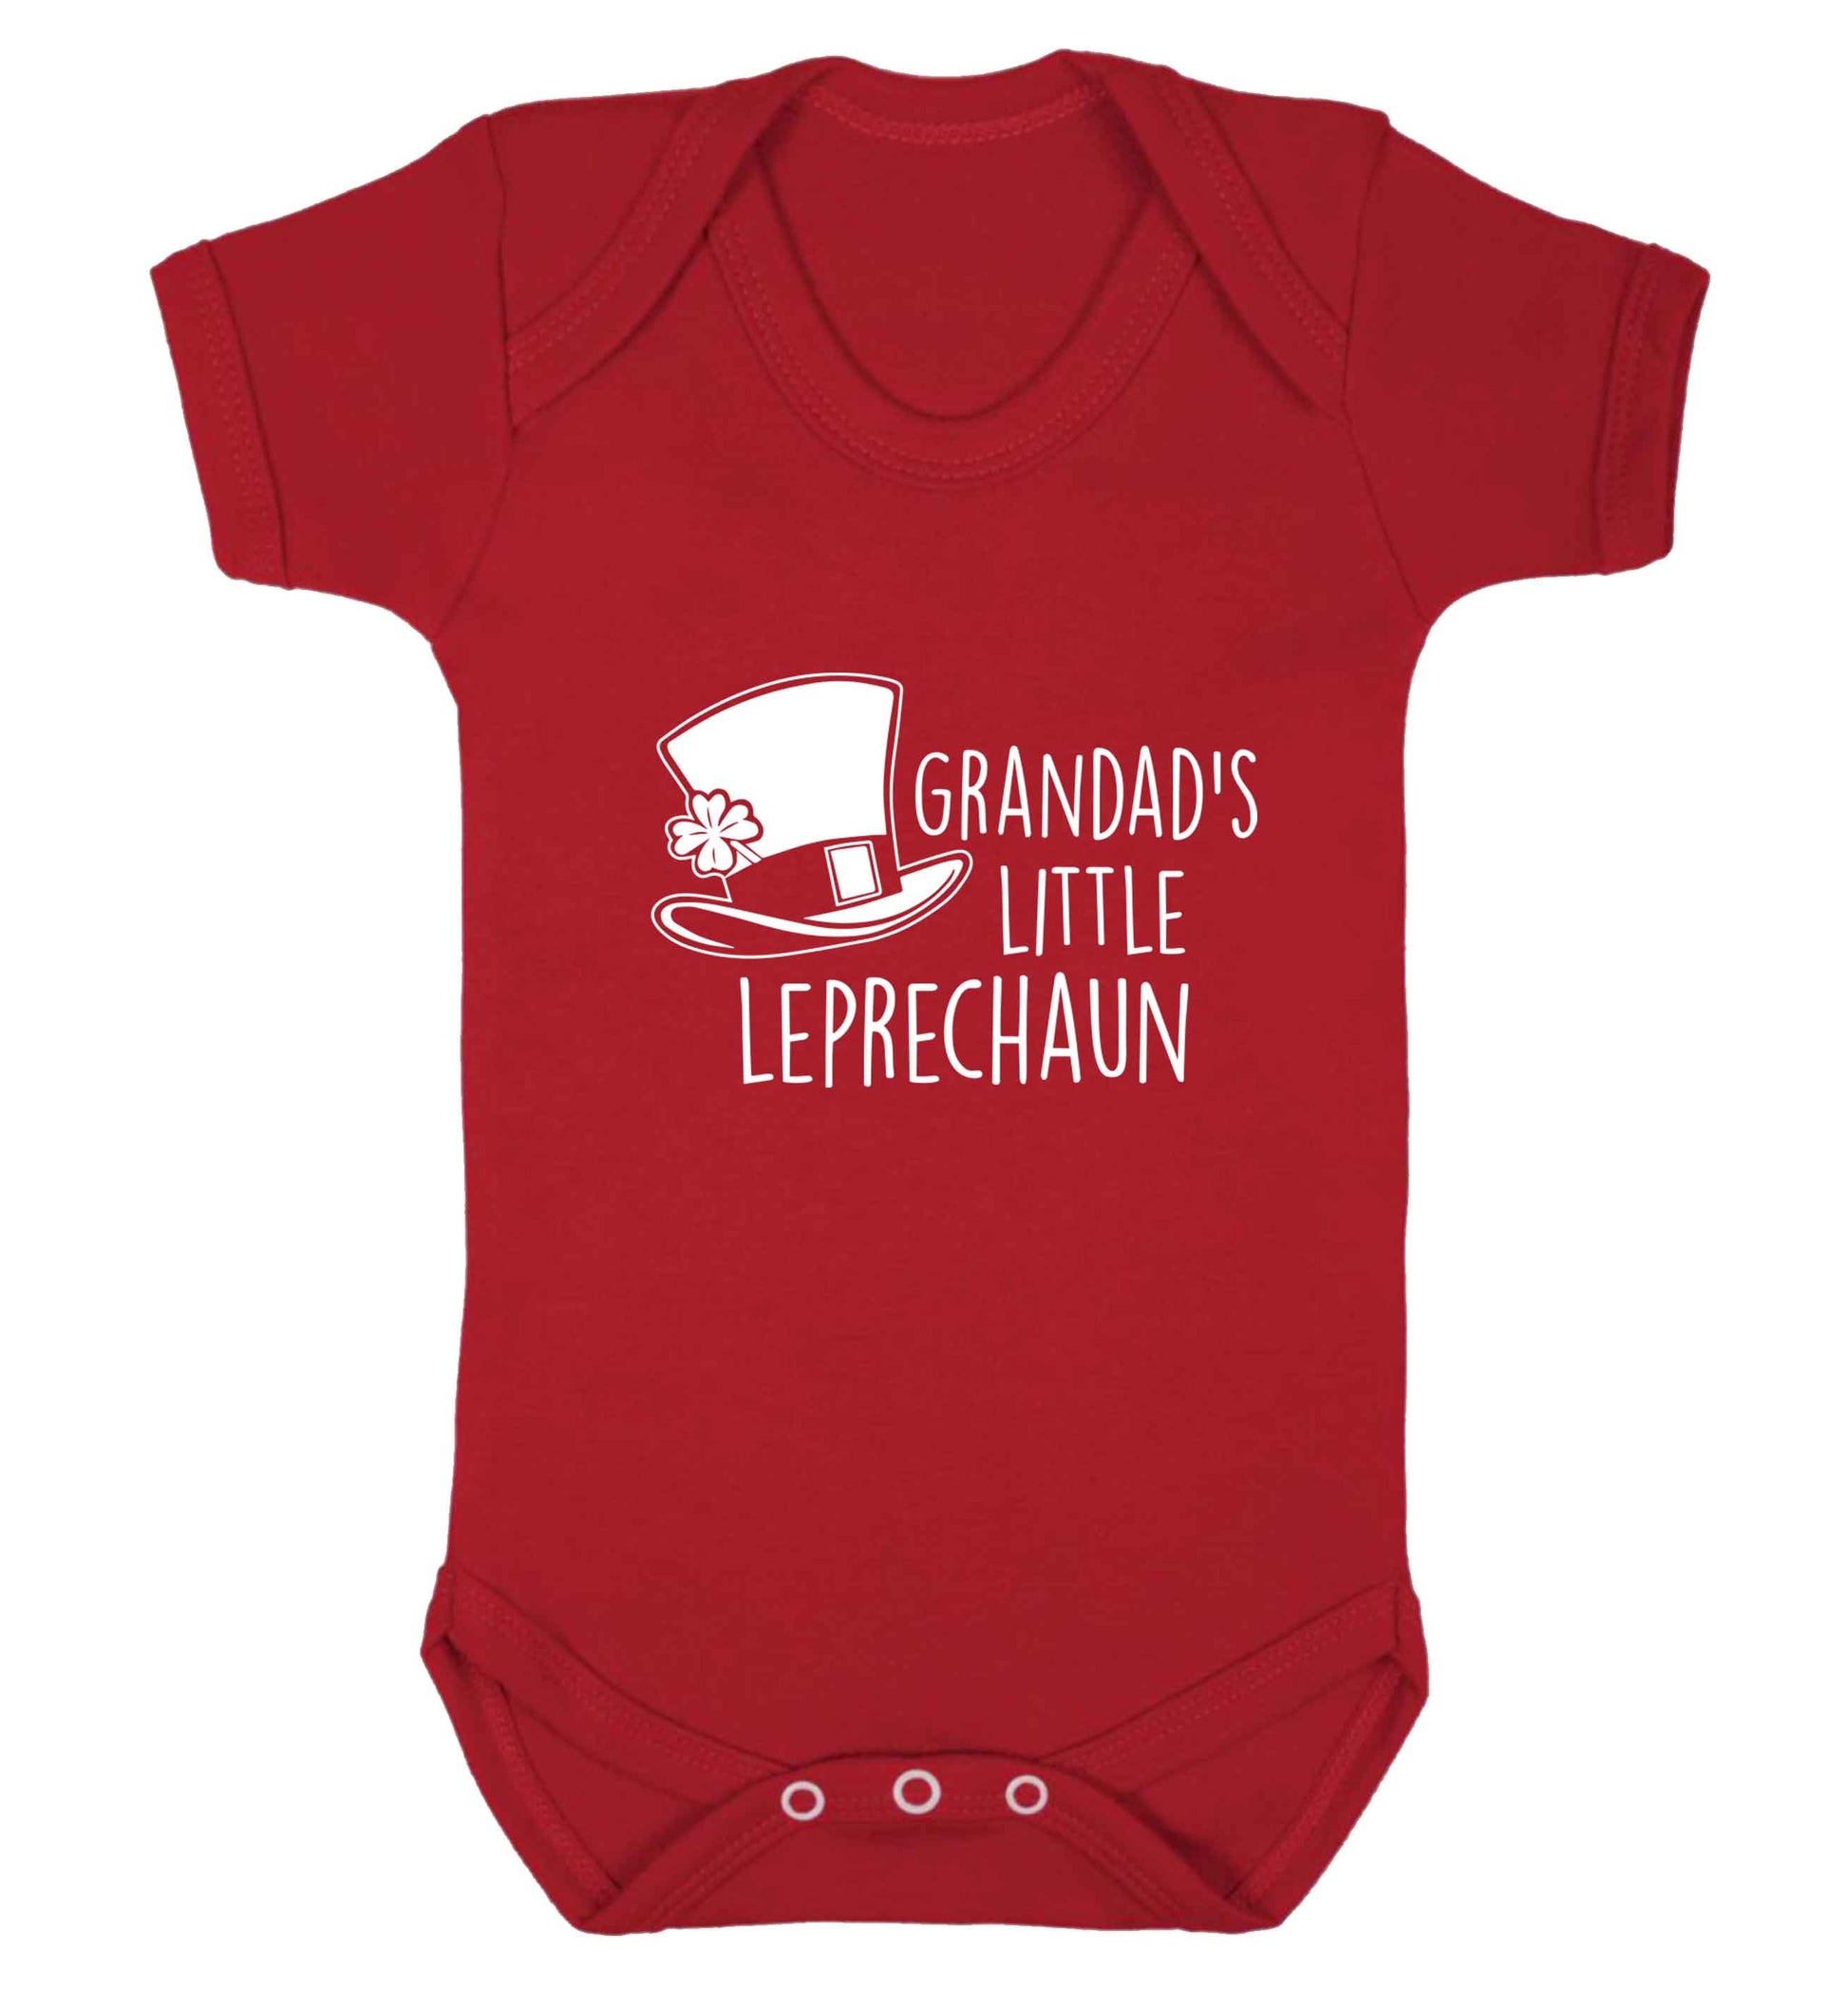 Grandad's little leprechaun baby vest red 18-24 months